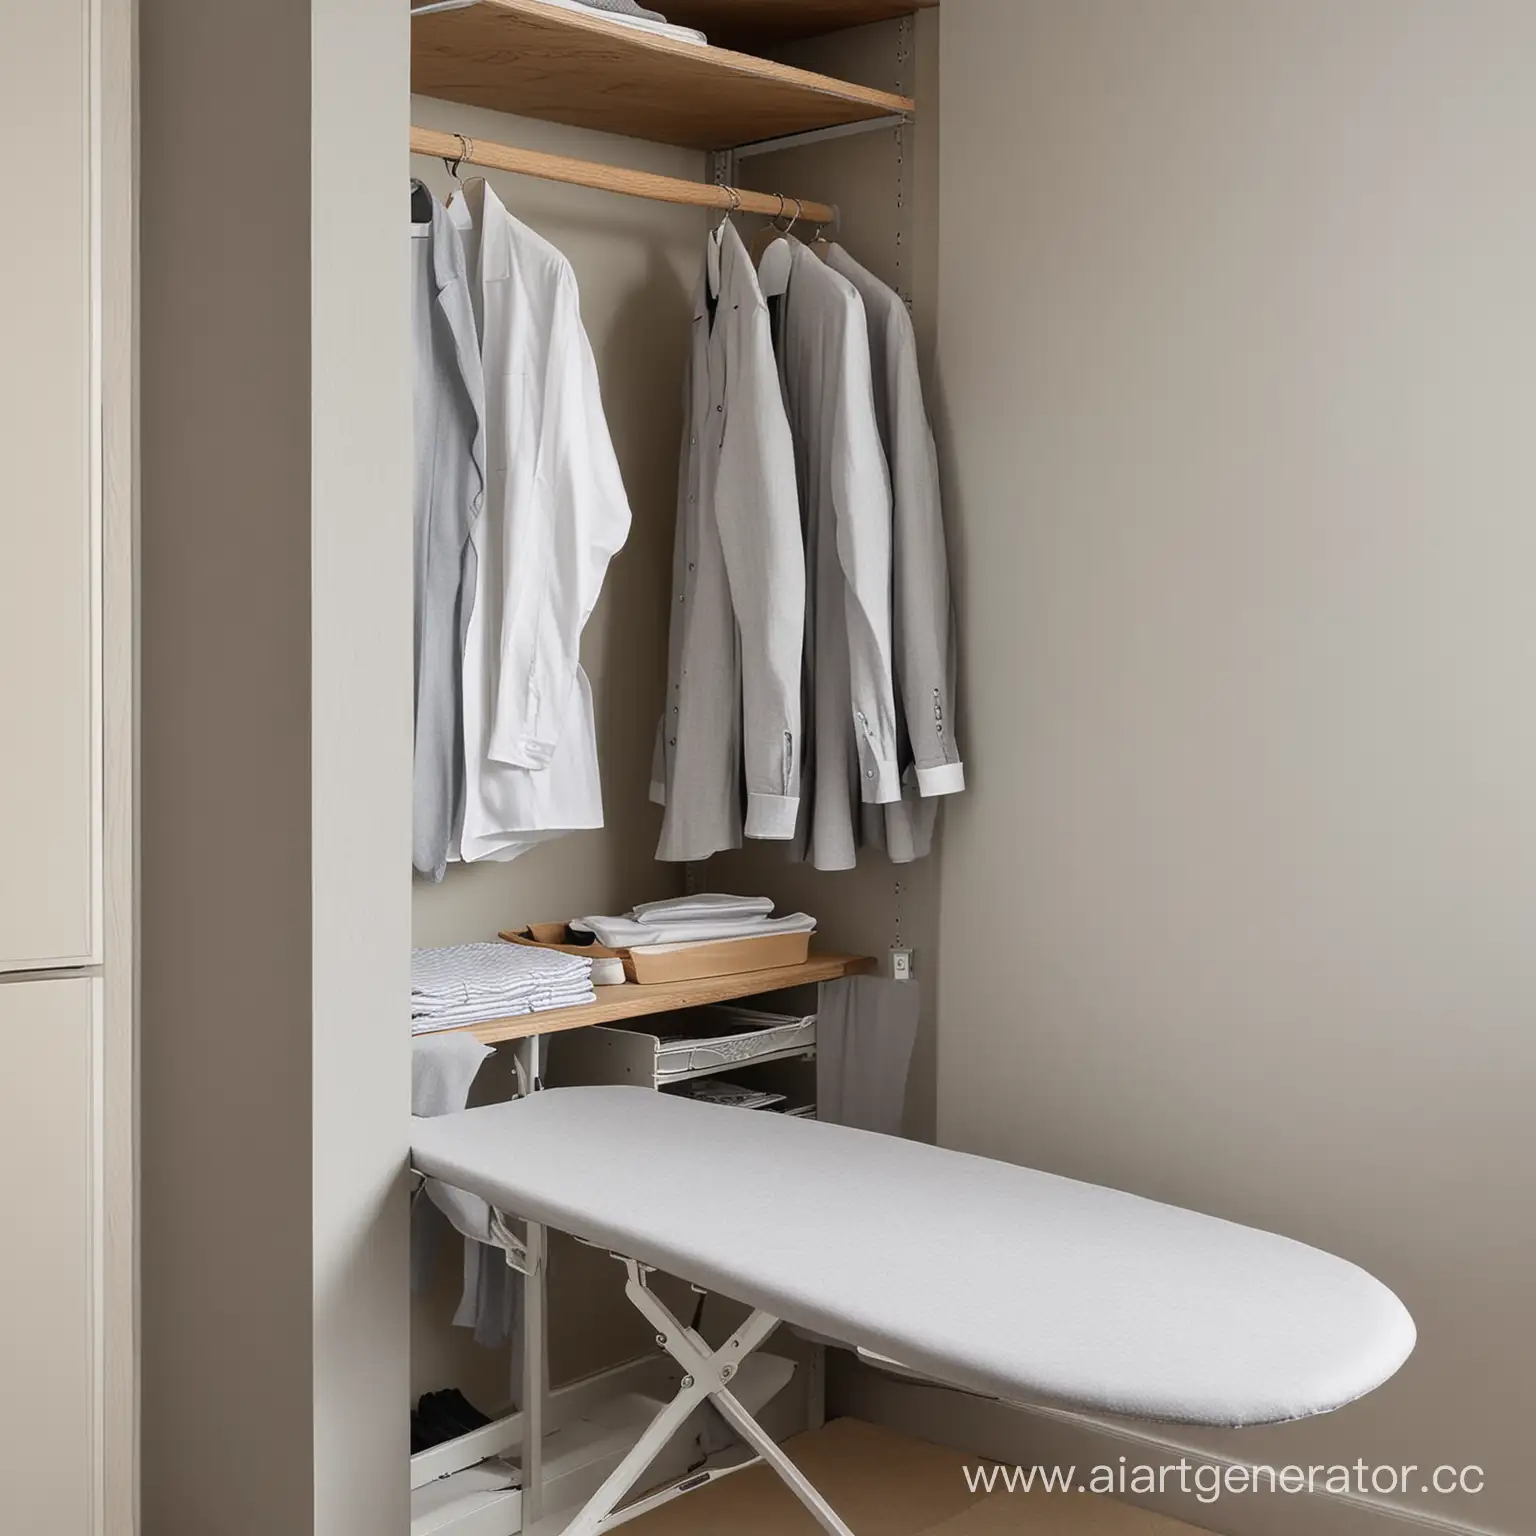 Гладильная доска серого цвета встроенная в шкаф с поглаженным бельем 